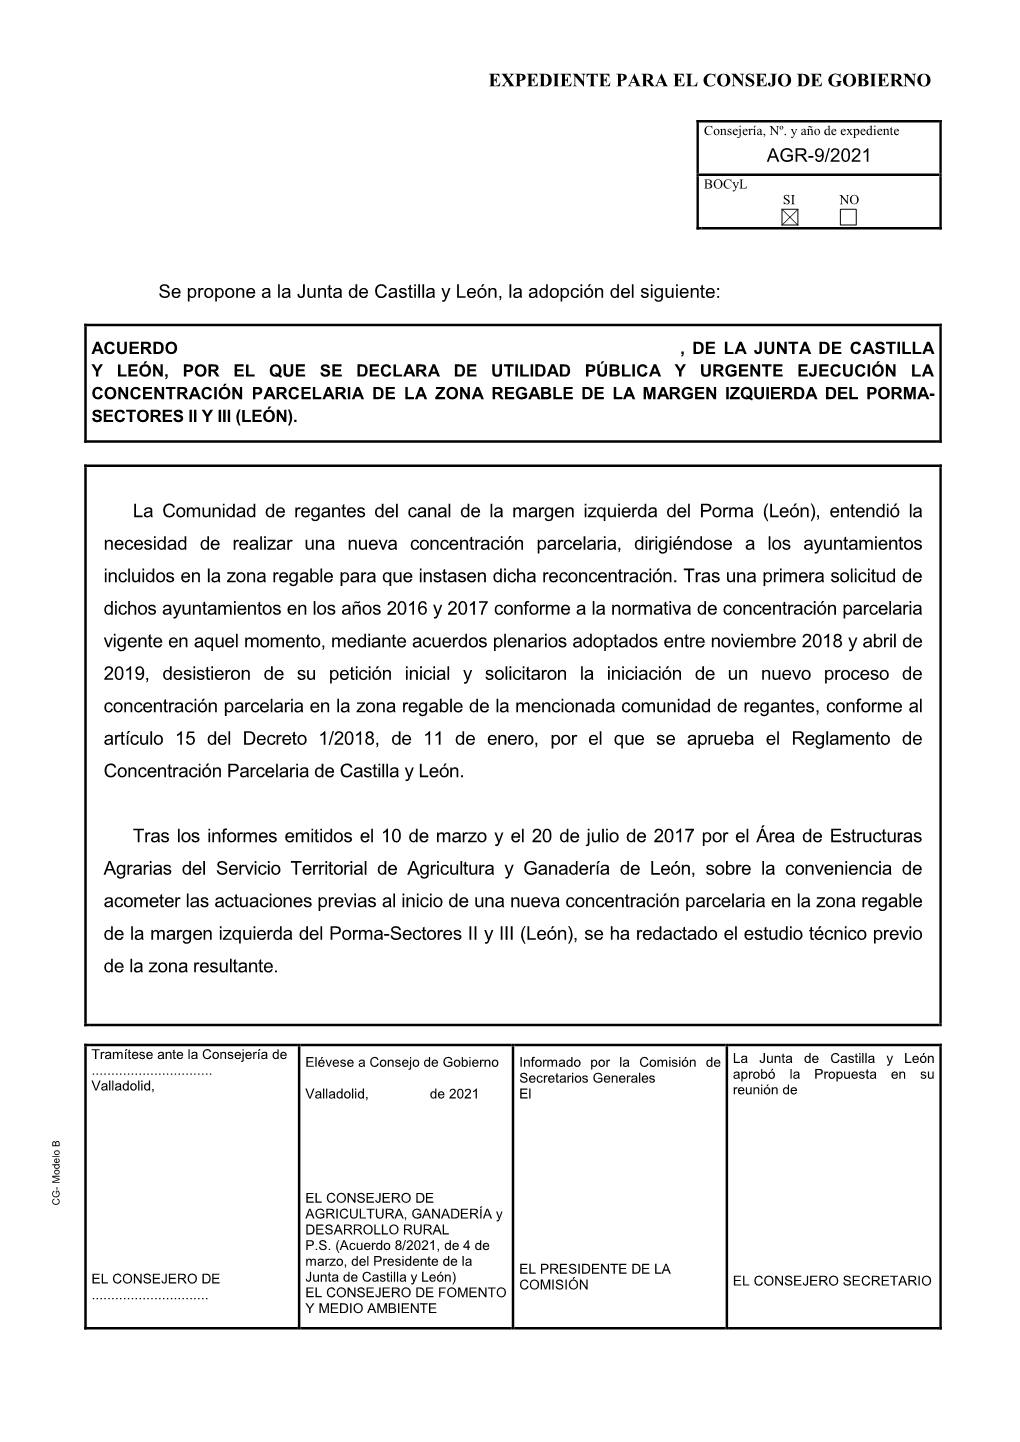 AGR-9/2021 Se Propone a La Junta De Castilla Y León, La Adopción Del Siguiente: La Comunidad De Regantes Del Canal De La Marge